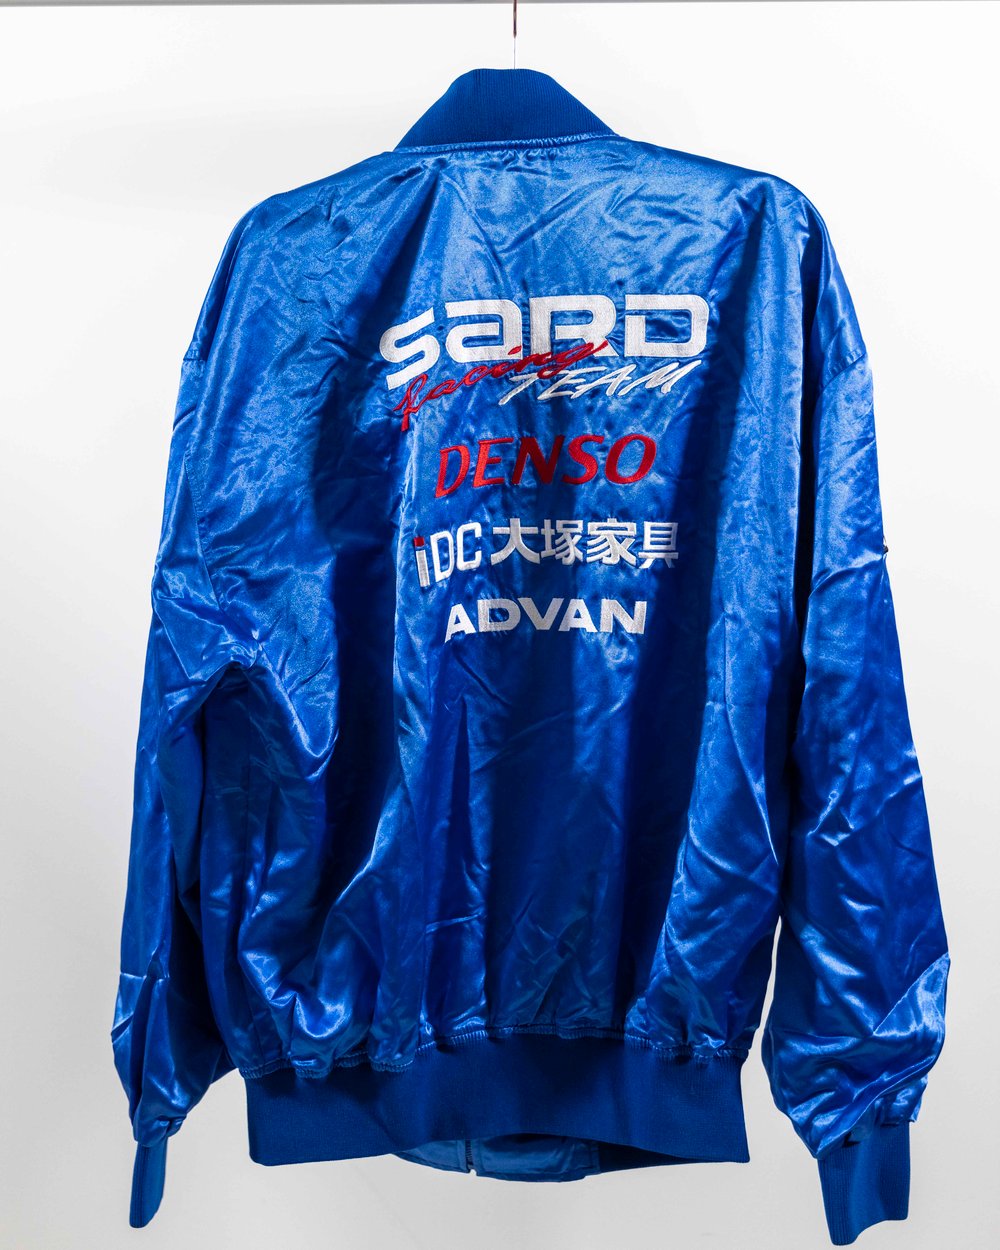 Toyota Team SARD/TRD/Advan Jacket (Extra Large) 